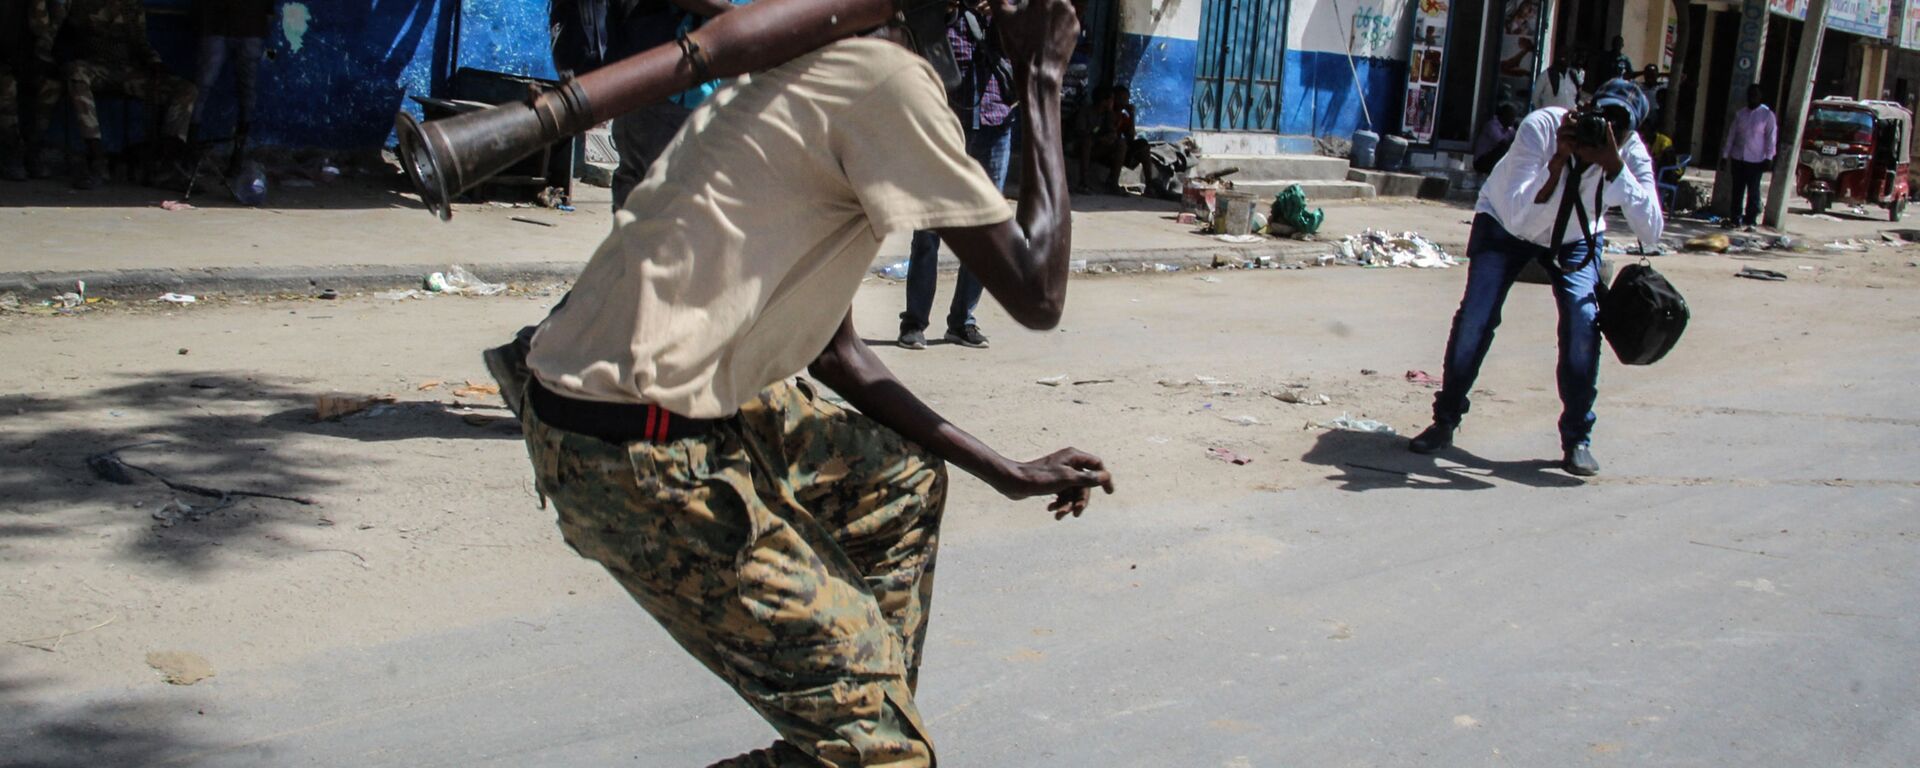 شخص يلتقط صورة لعضو في القوة العسكرية الصومالية يدعم المناوئين للحكومة أثناء وقوفه في أحد شوارع مقديشو، الصومال، 25 أبريل 2021 - سبوتنيك عربي, 1920, 25.10.2022